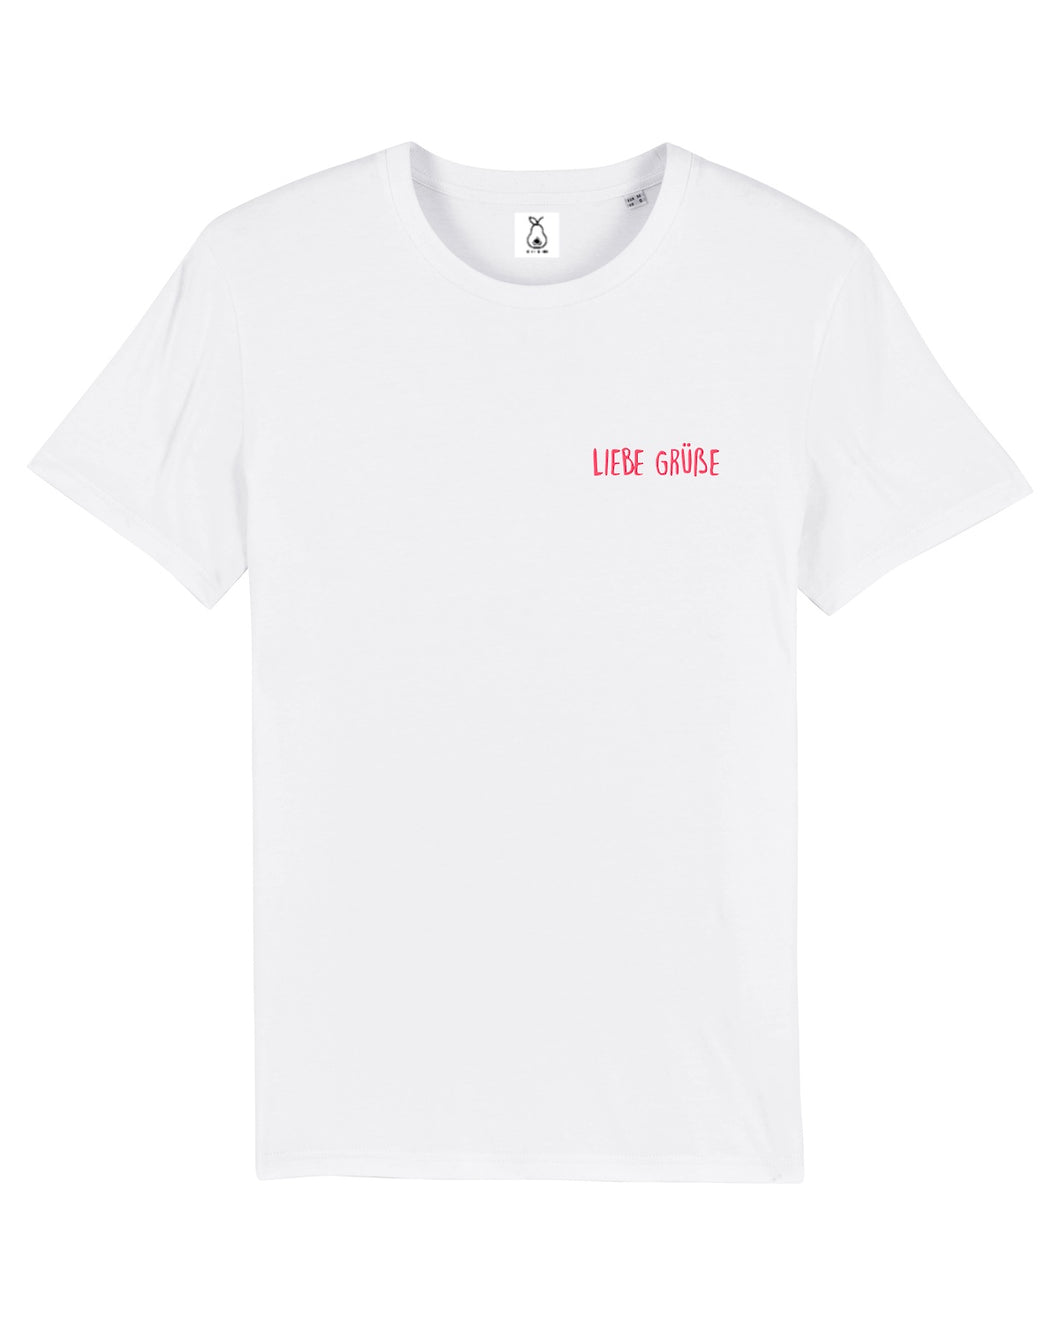 Liebe Grüße - T-Shirt - White